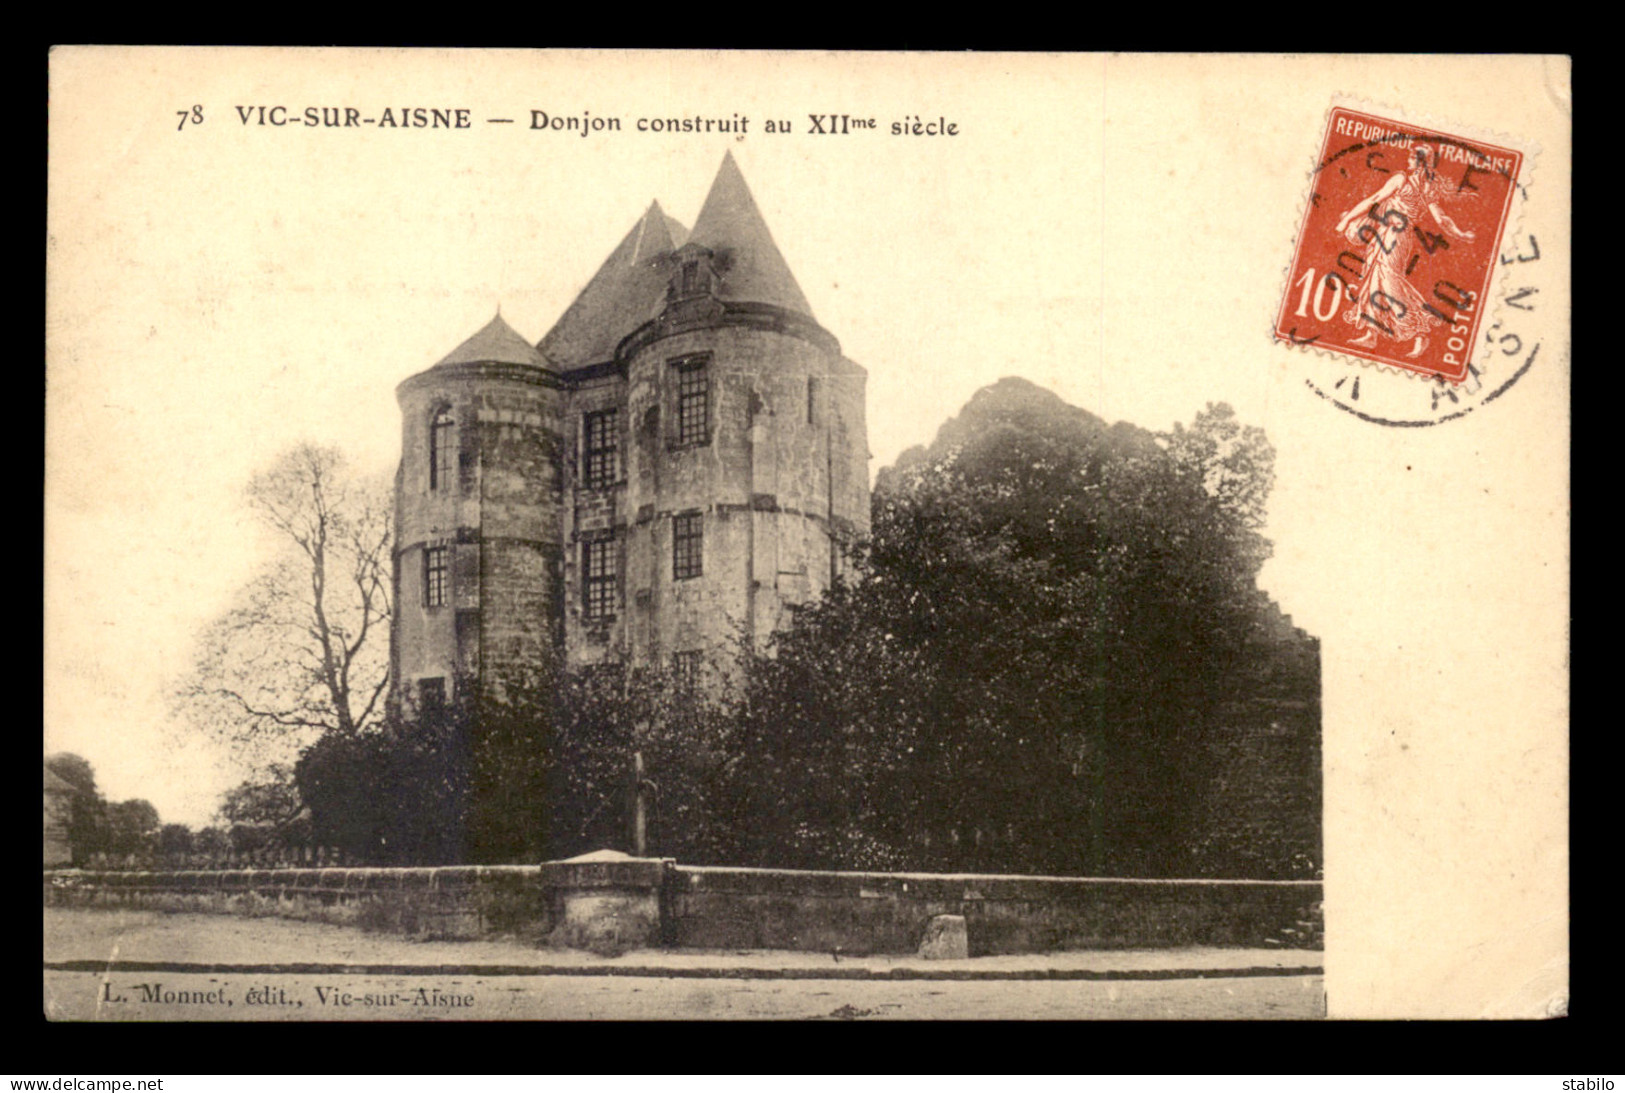 02 - VIC-SUR-AISNE - DONJON CONSTRUIT AU XIIE SIECLE - Vic Sur Aisne